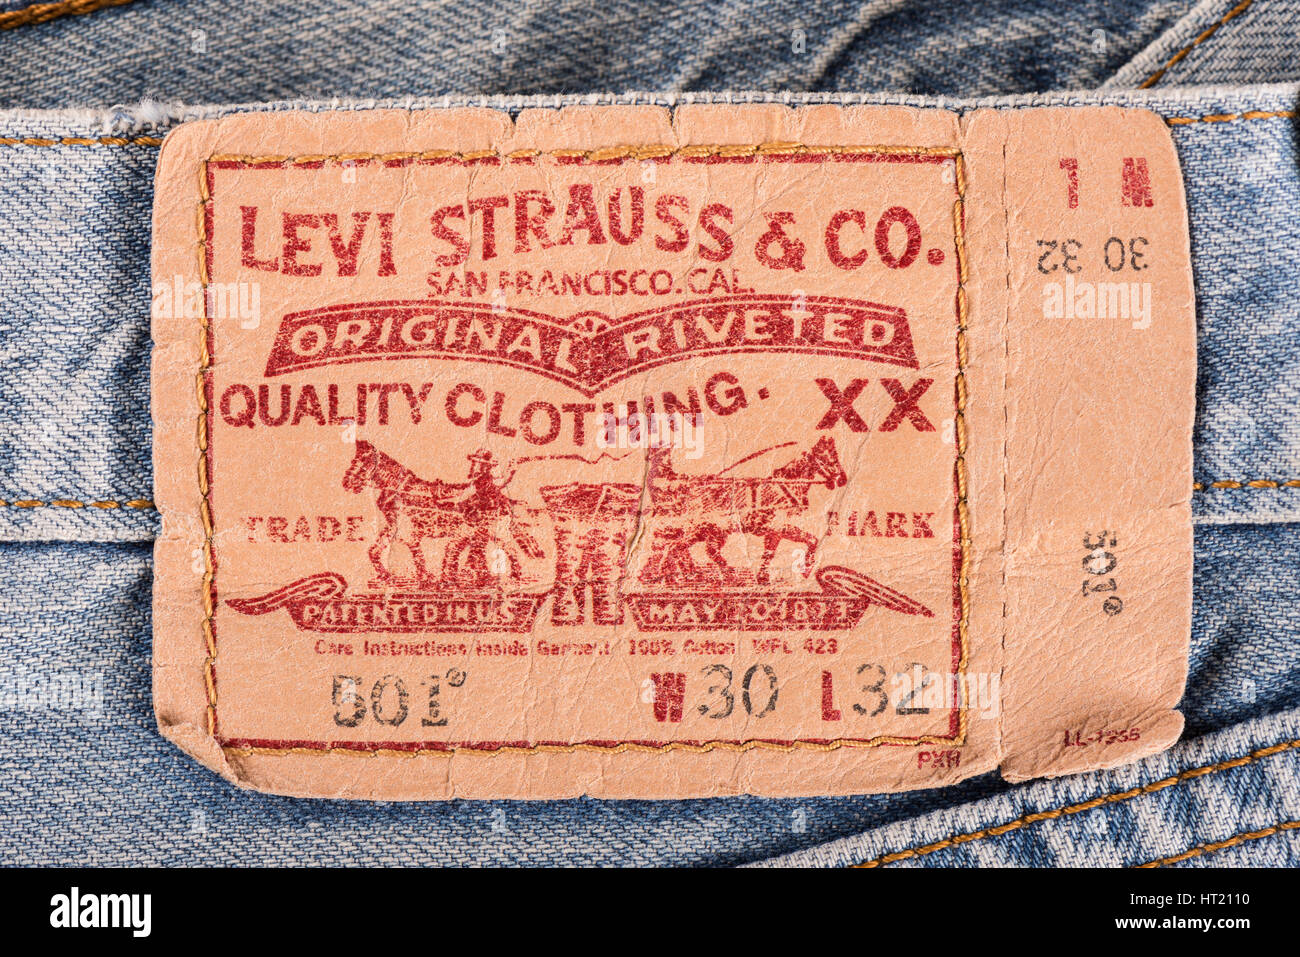 BANGKOK, THAILAND - 9. Dezember 2014: Nahaufnahme von LEVI'S-Leder-Label  auf die alte blaue Jeans. LEVI'S ist ein Markenname von Levi Strauss &amp;  Co., gefunden Stockfotografie - Alamy